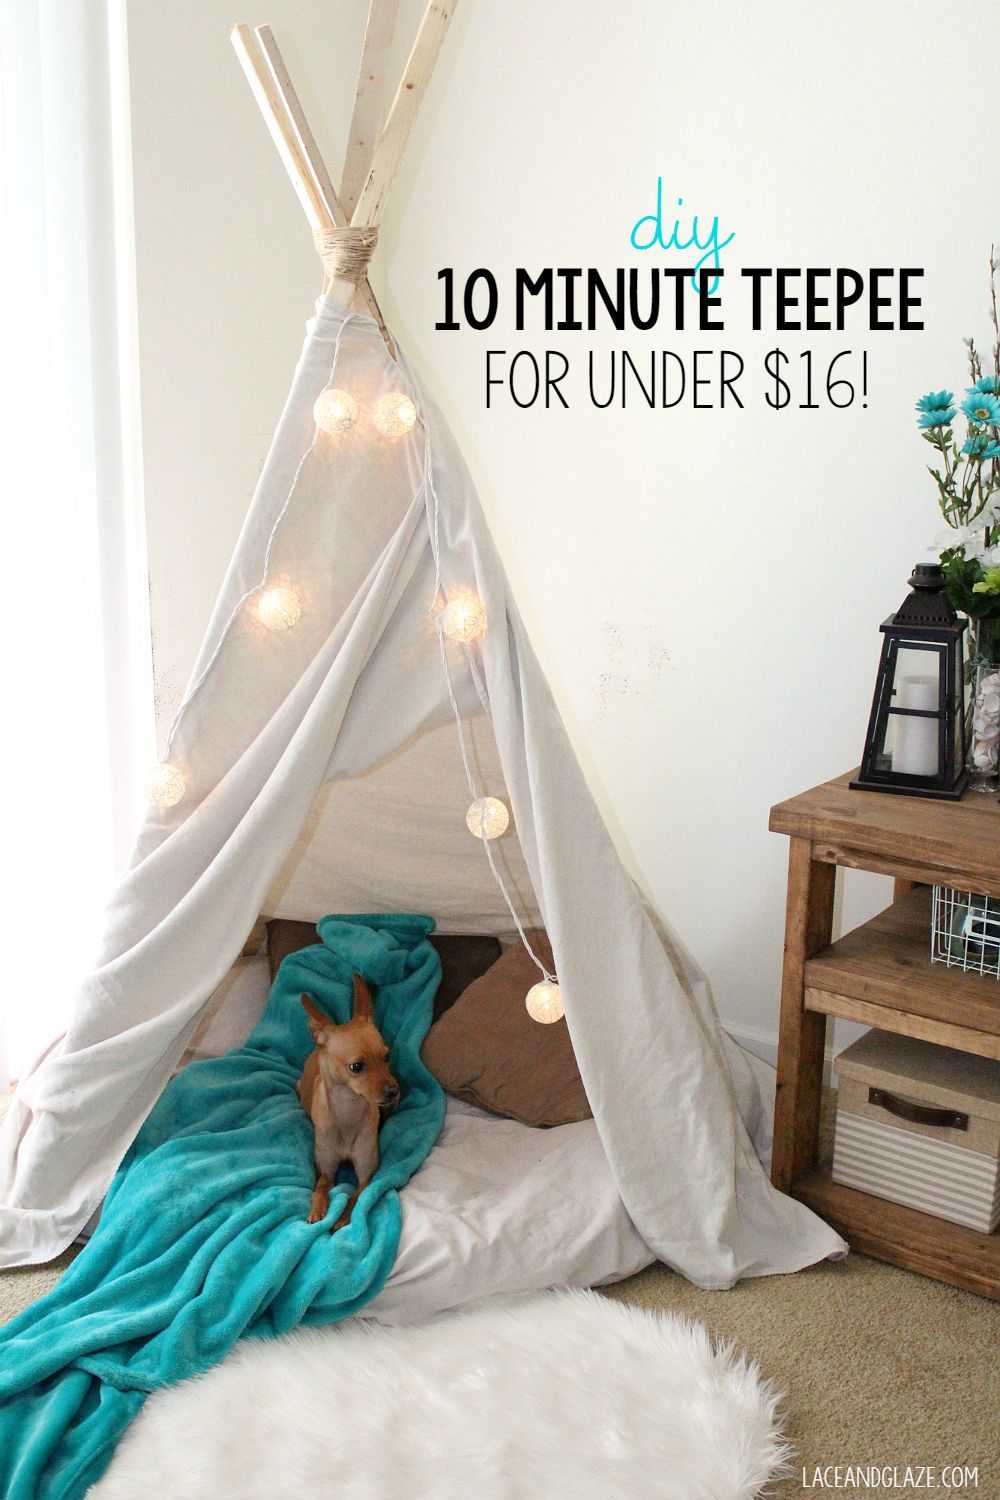 DIY 10 Minute Teepee for Under $16! | Sweet Teal - DIY 10 Minute Teepee for Under $16! | Sweet Teal -   24 diy Kids teepee ideas